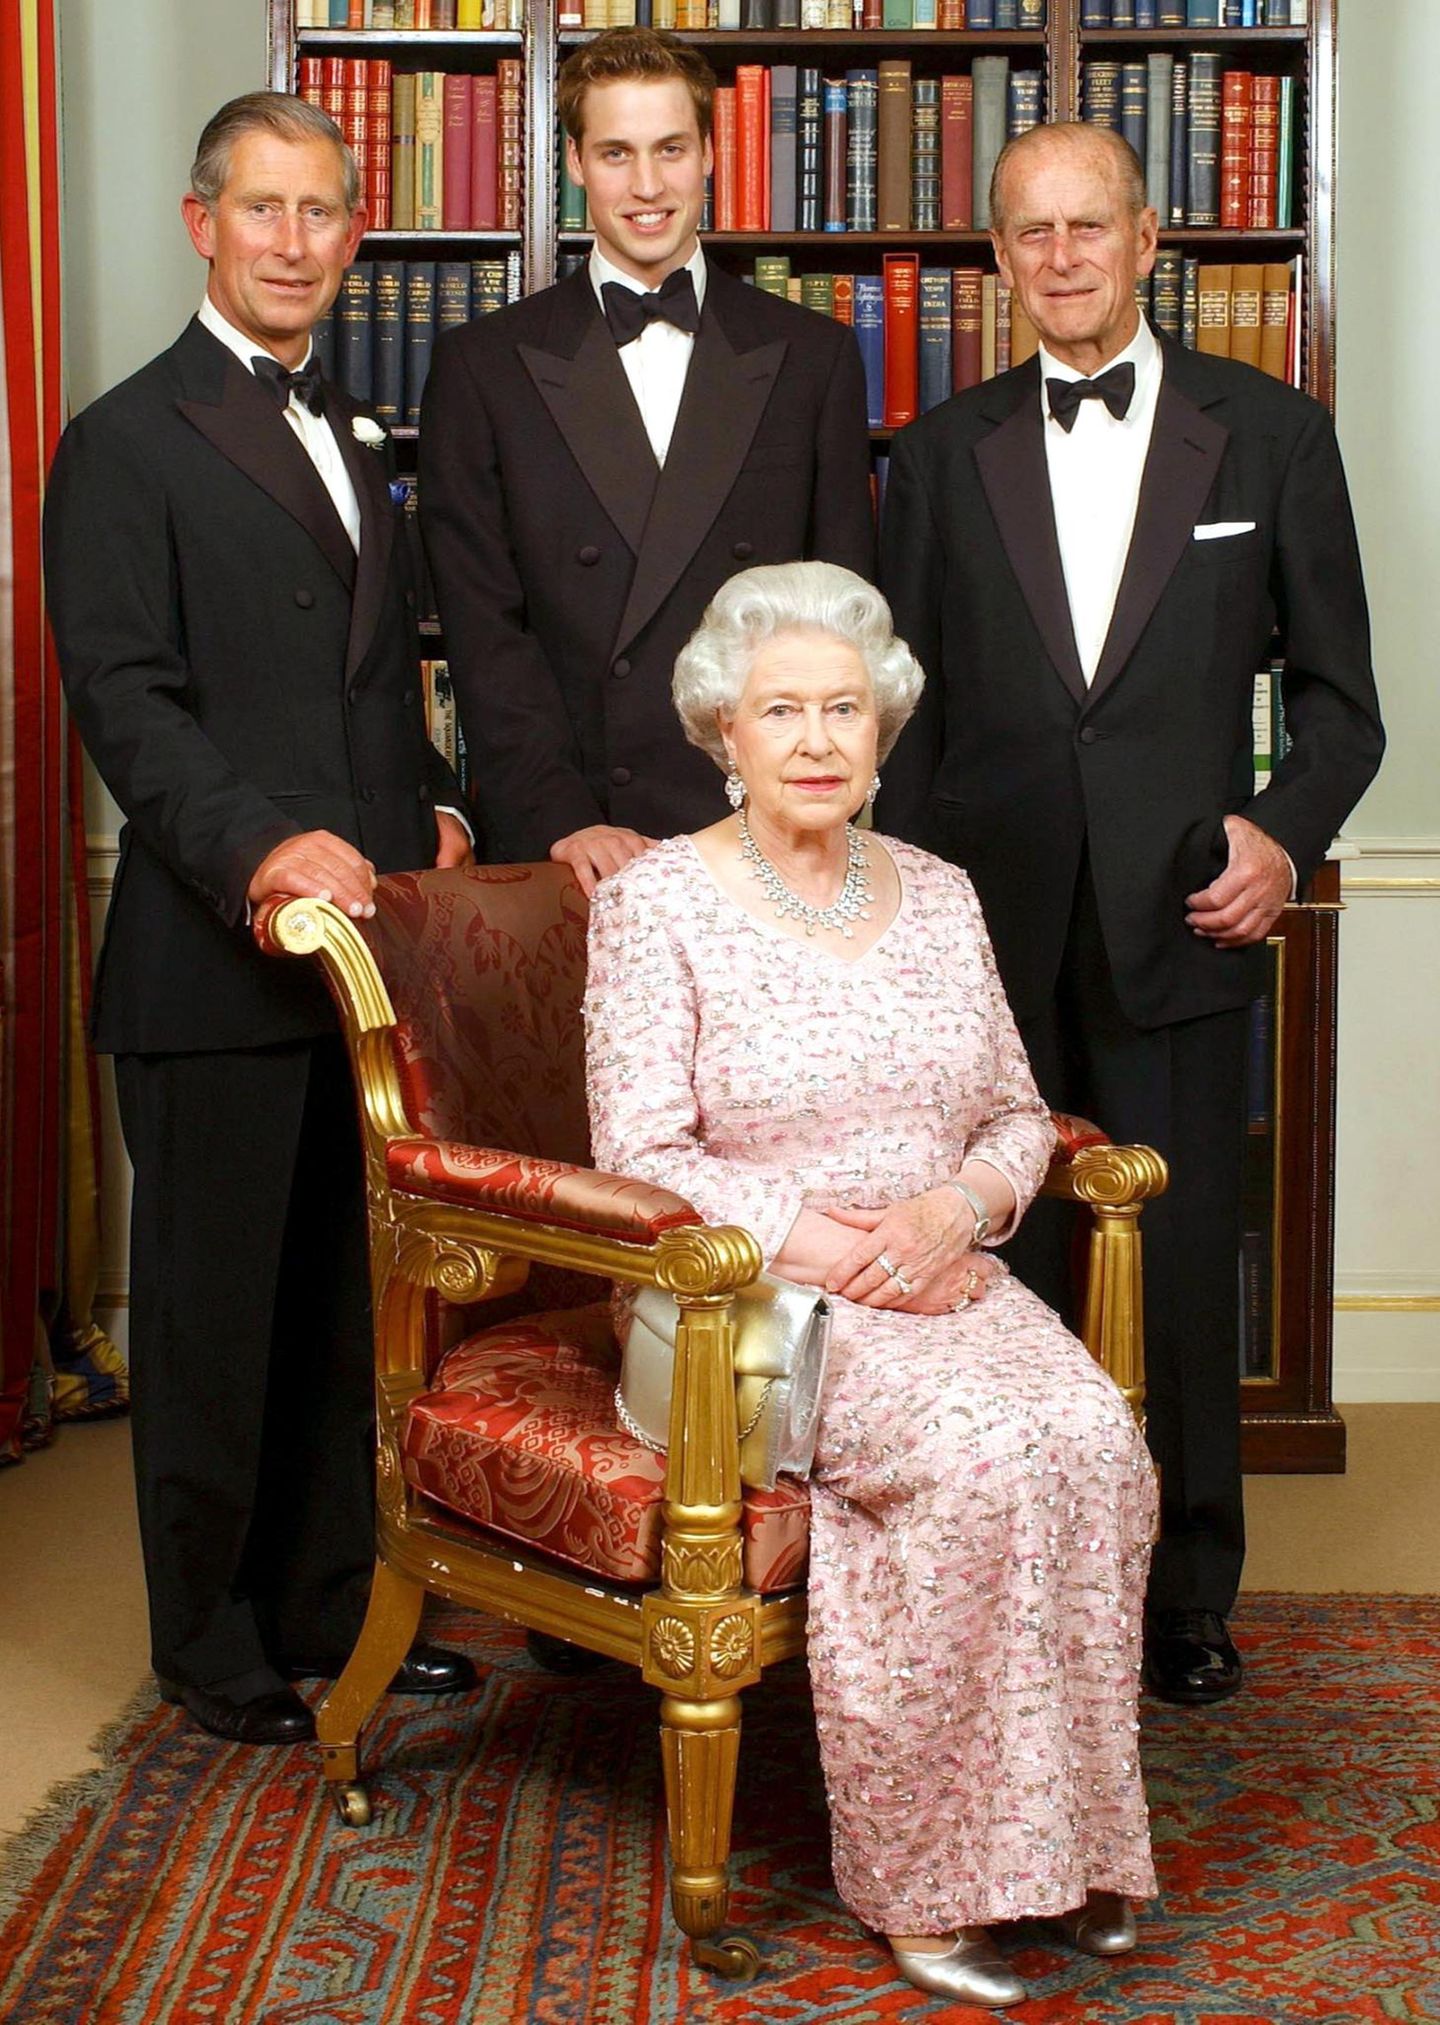 Juni 2003:In "Clarence House", der ehemaligen Residenz von Queen Mum, entsteht ein Drei-Generationen-Foto, das die Queen mit ihrem Mann, ihrem ältesten Sohn Charles und dessen ältestem Sohn William zeigt. Das anschließende Dinner ist Teil der Feierlichkeiten, mit denen die Königin ihr 50. Thronjubiläum feiert.